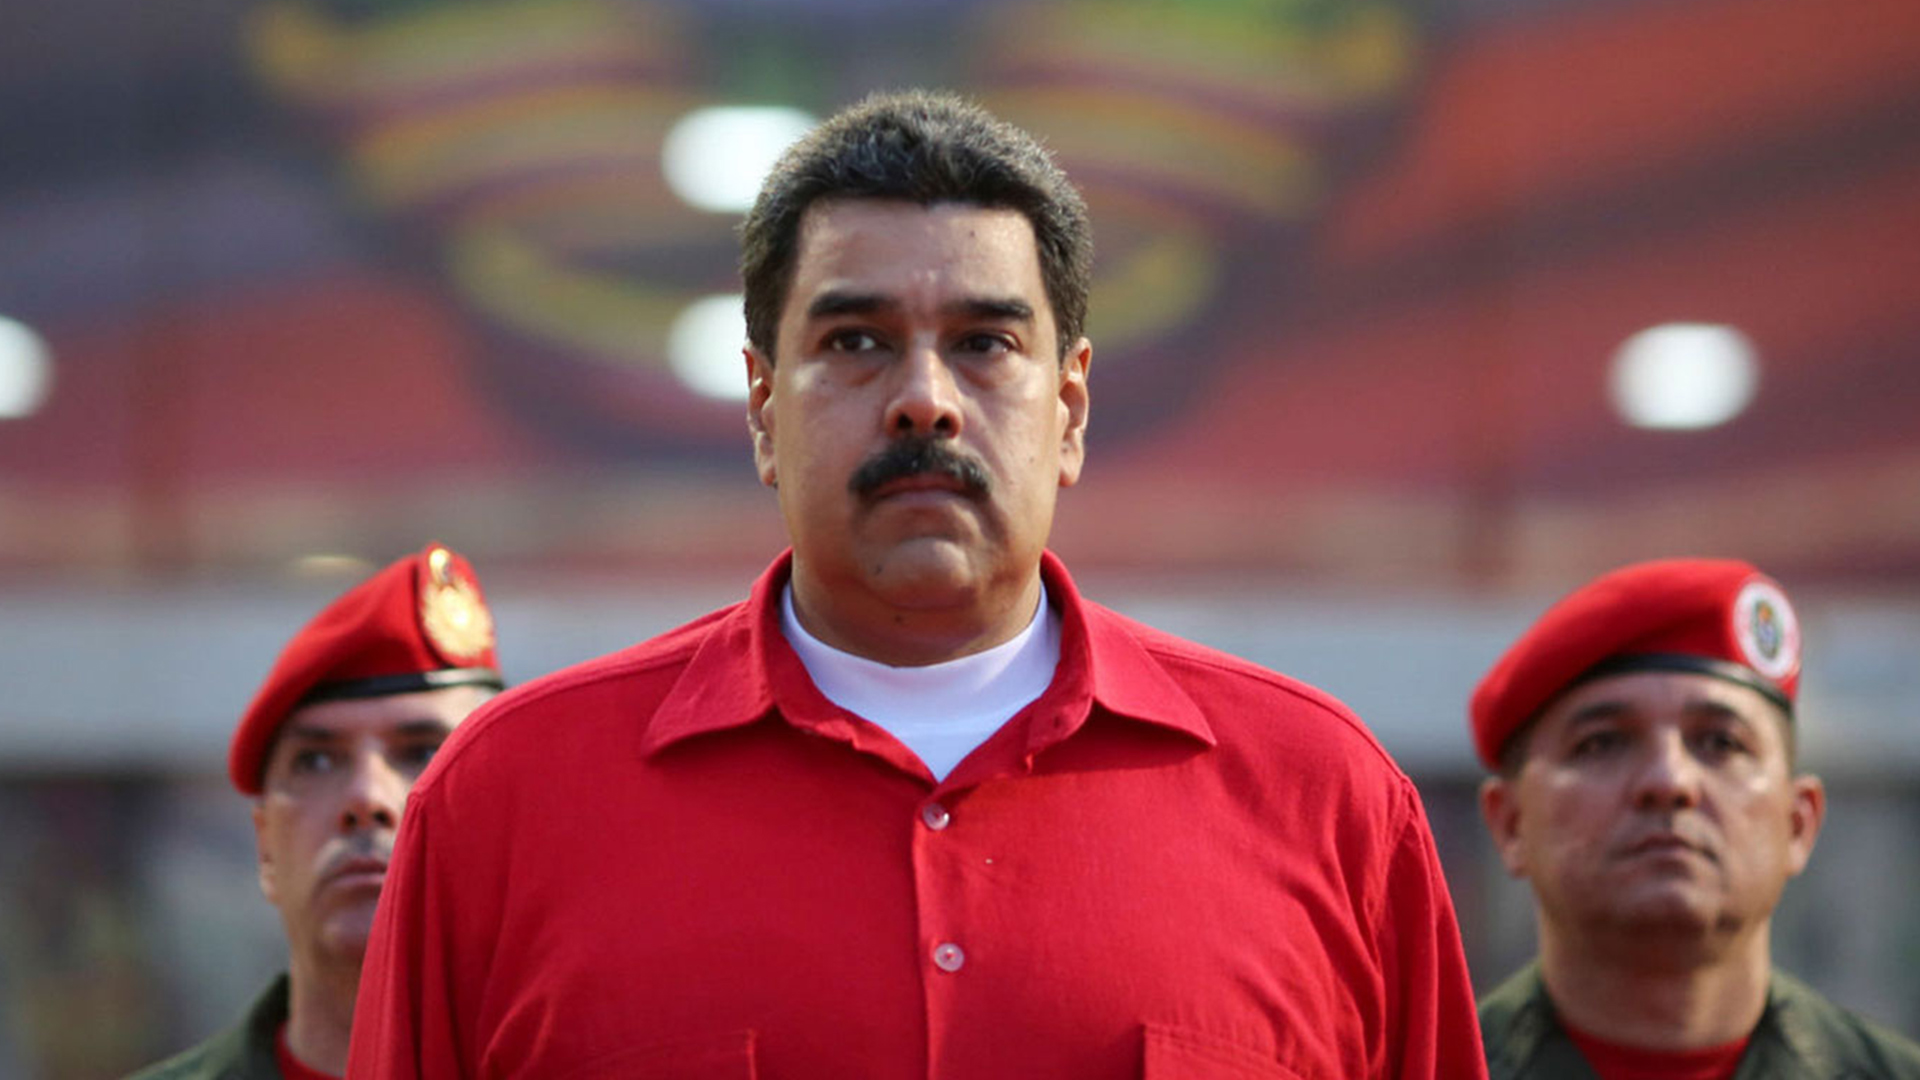 El dictador venezolano Nicolás Maduro